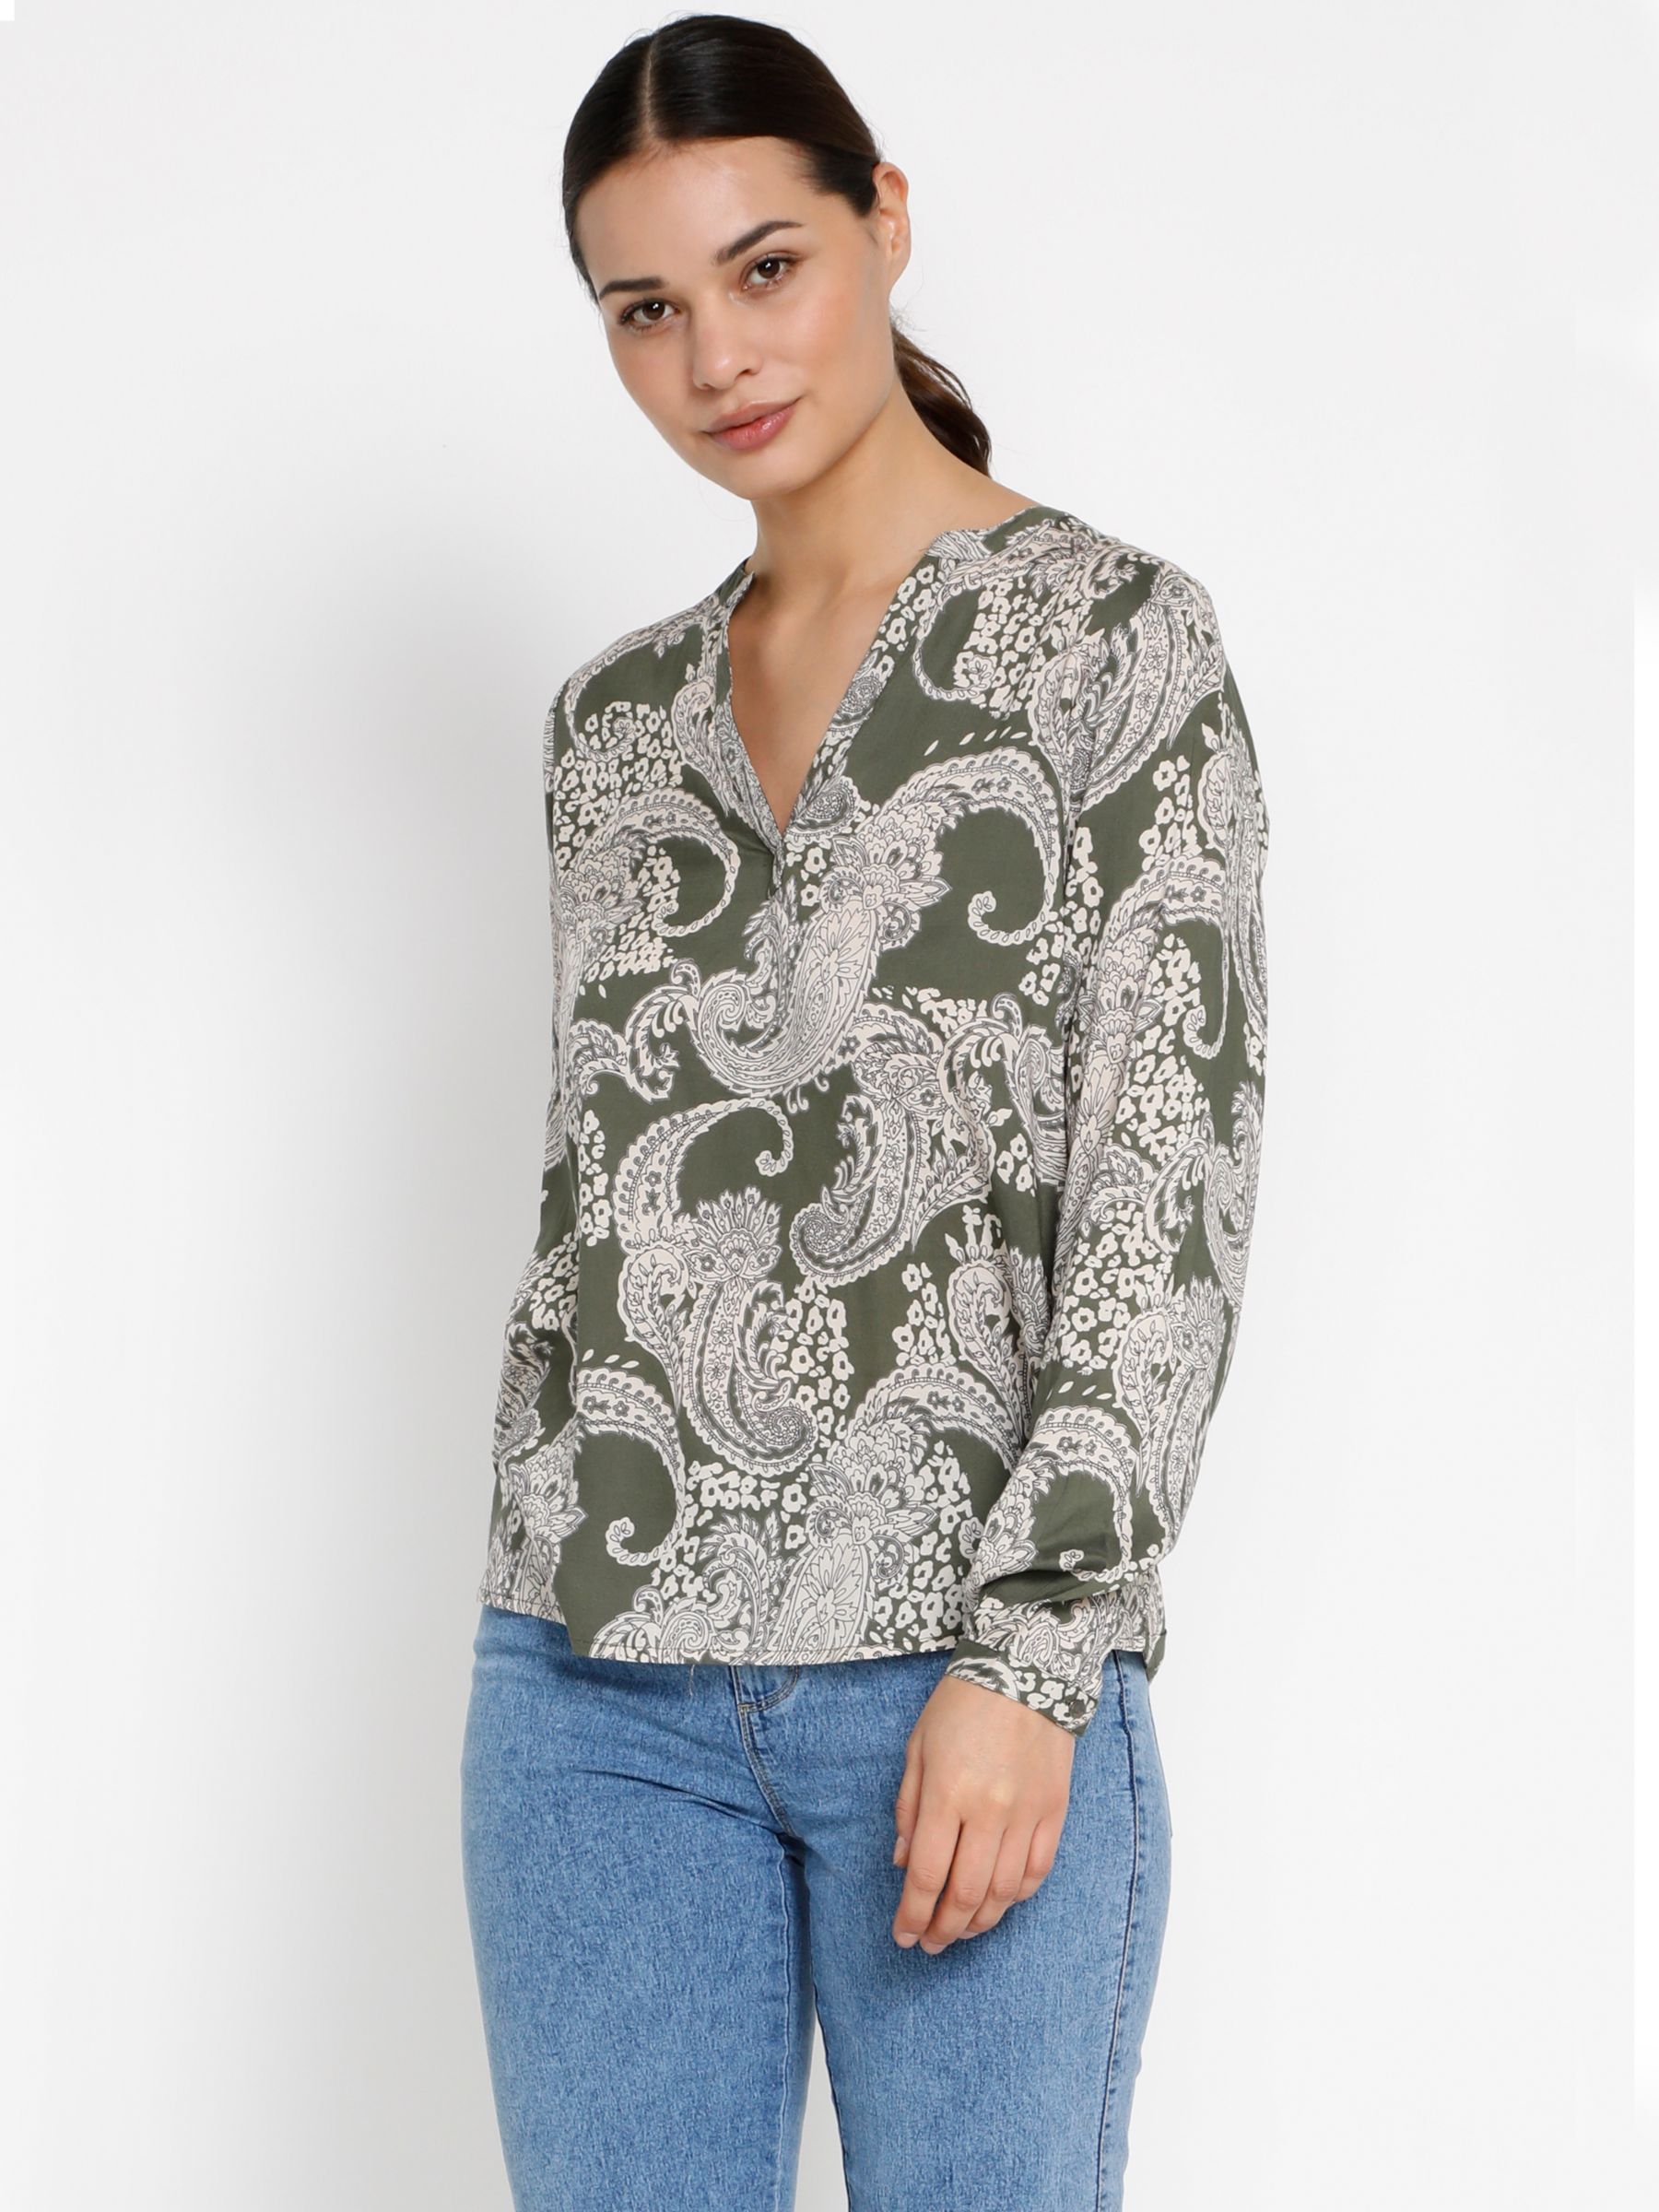 Блузка с V-образным вырезом и принтом пейсли KAFFE, виноградный лист лазурная хлопковая блузка с пейсли rhode цвет lime diamond stitch